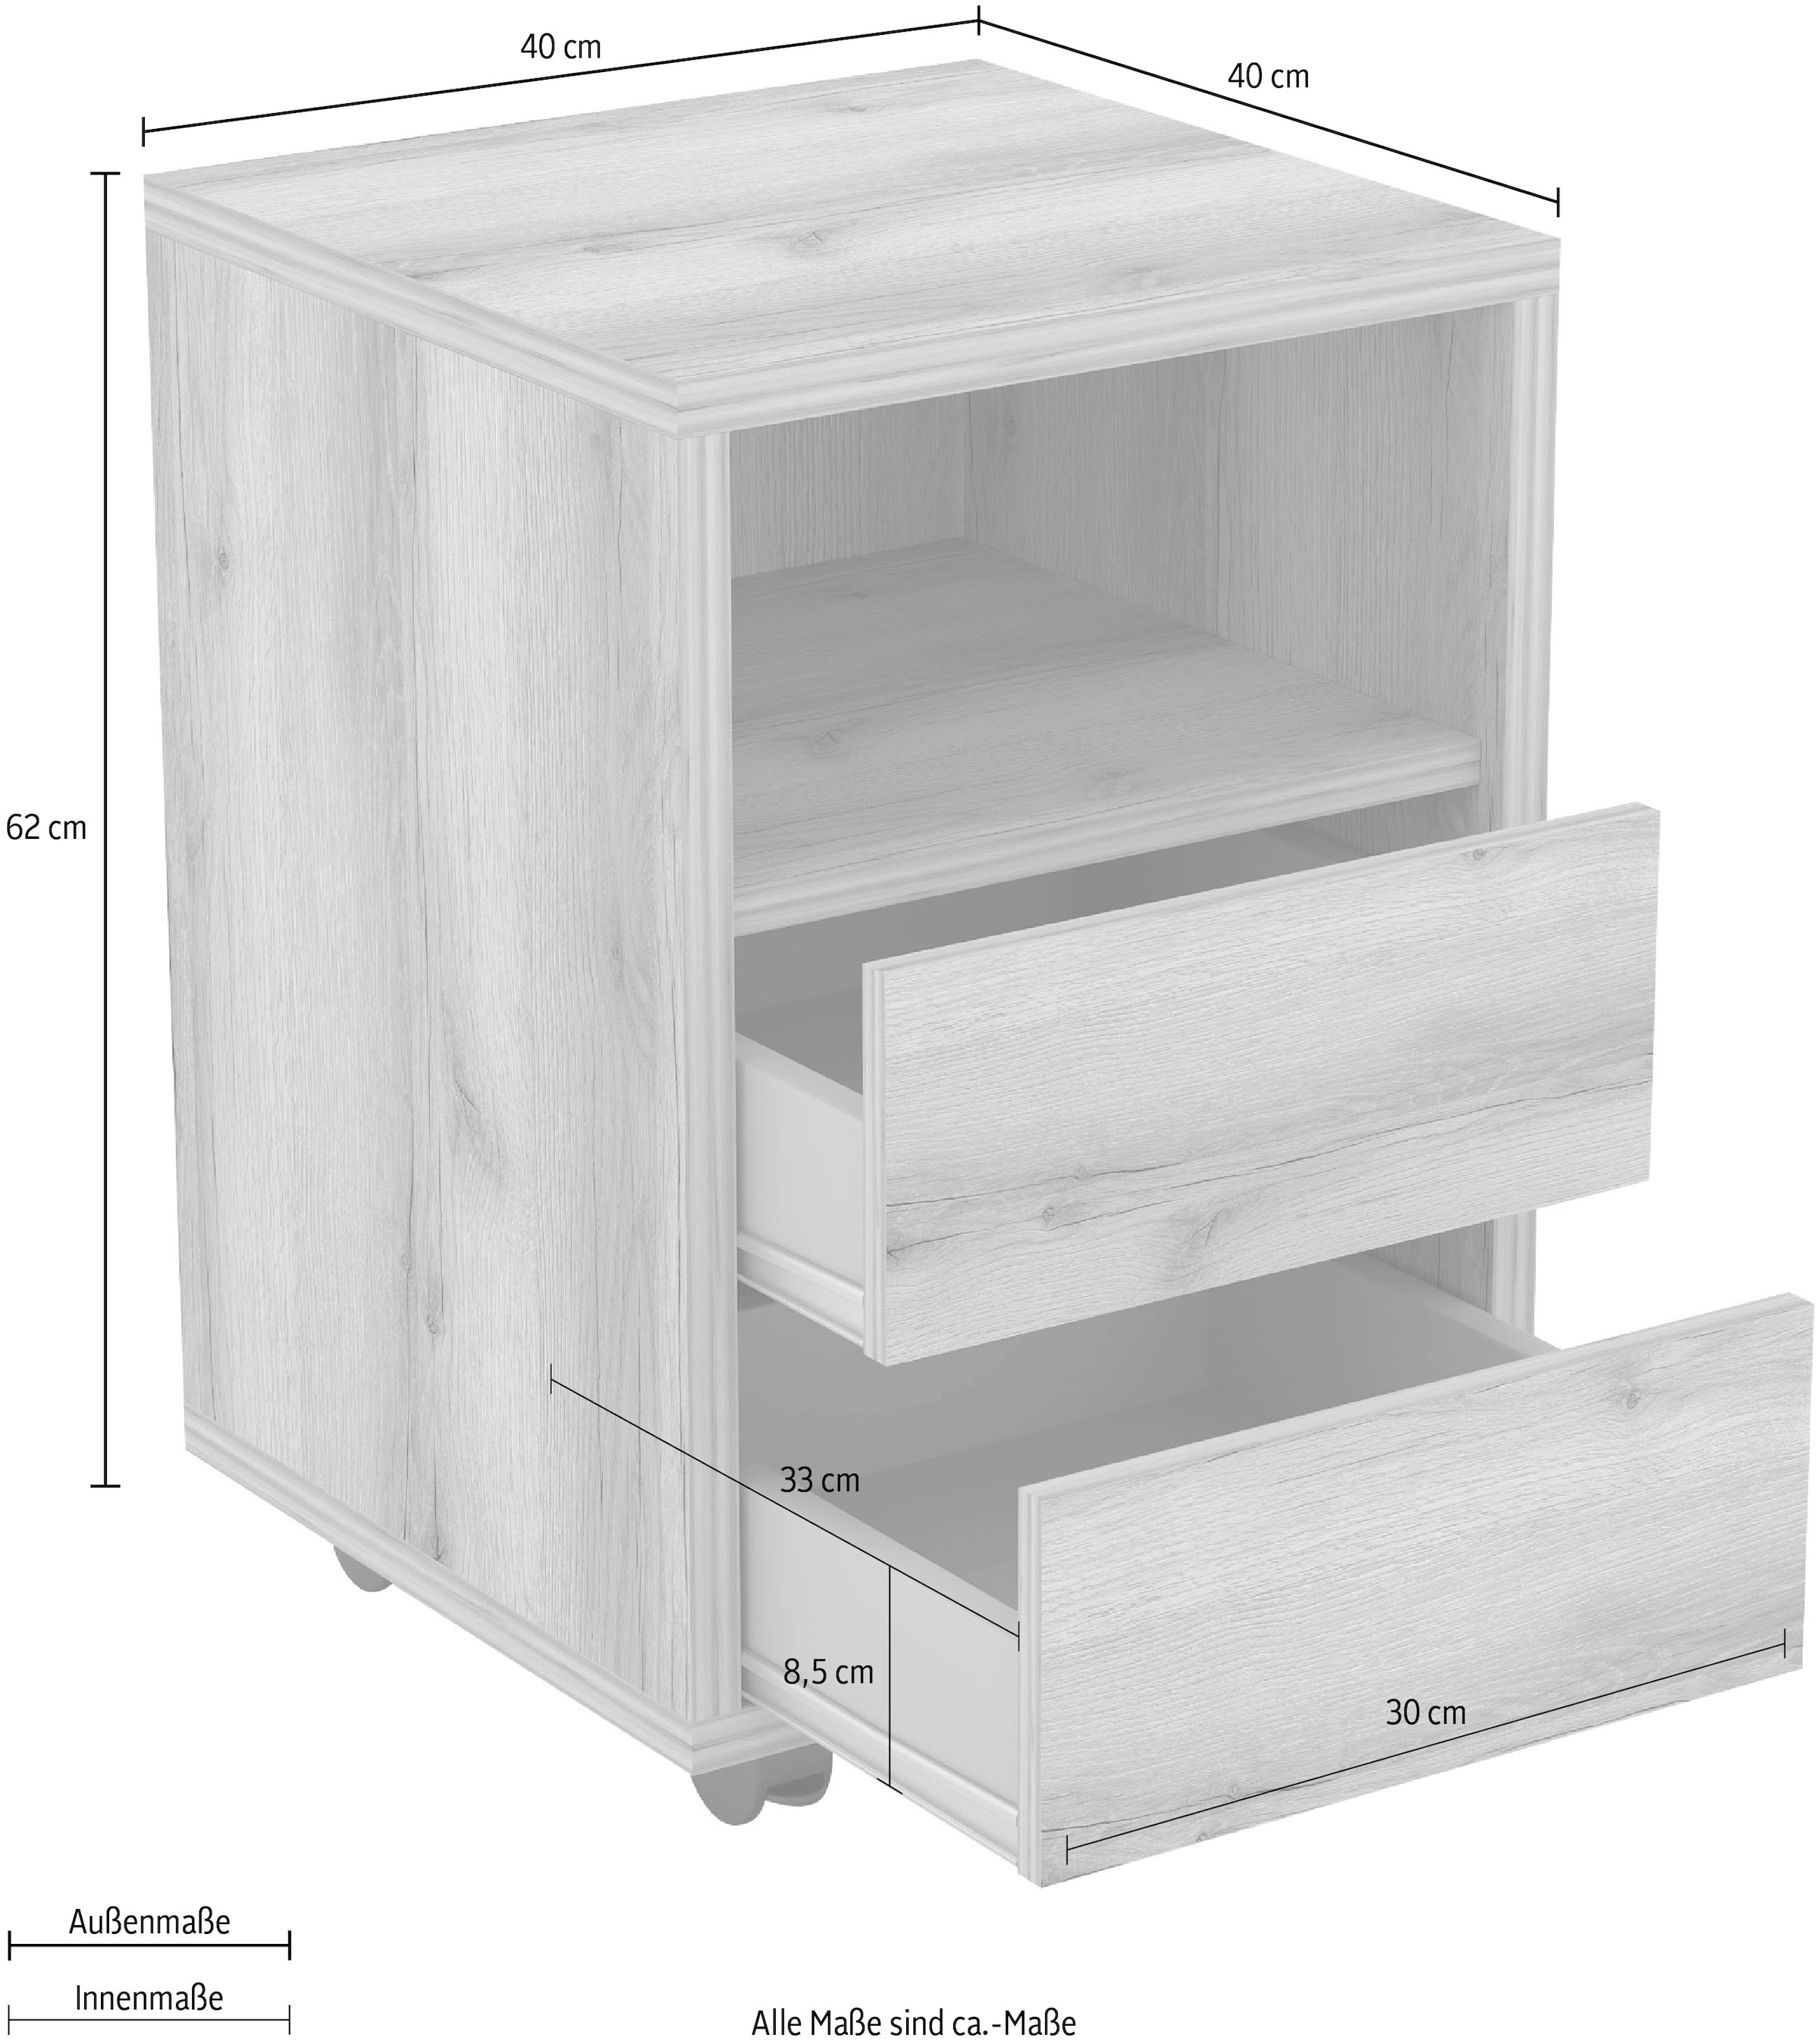 Helvetia Rollcontainer »Agapi«, Bürocontainer im modernen Design, 40x40x62  cm, 2 Schubkästen | BAUR